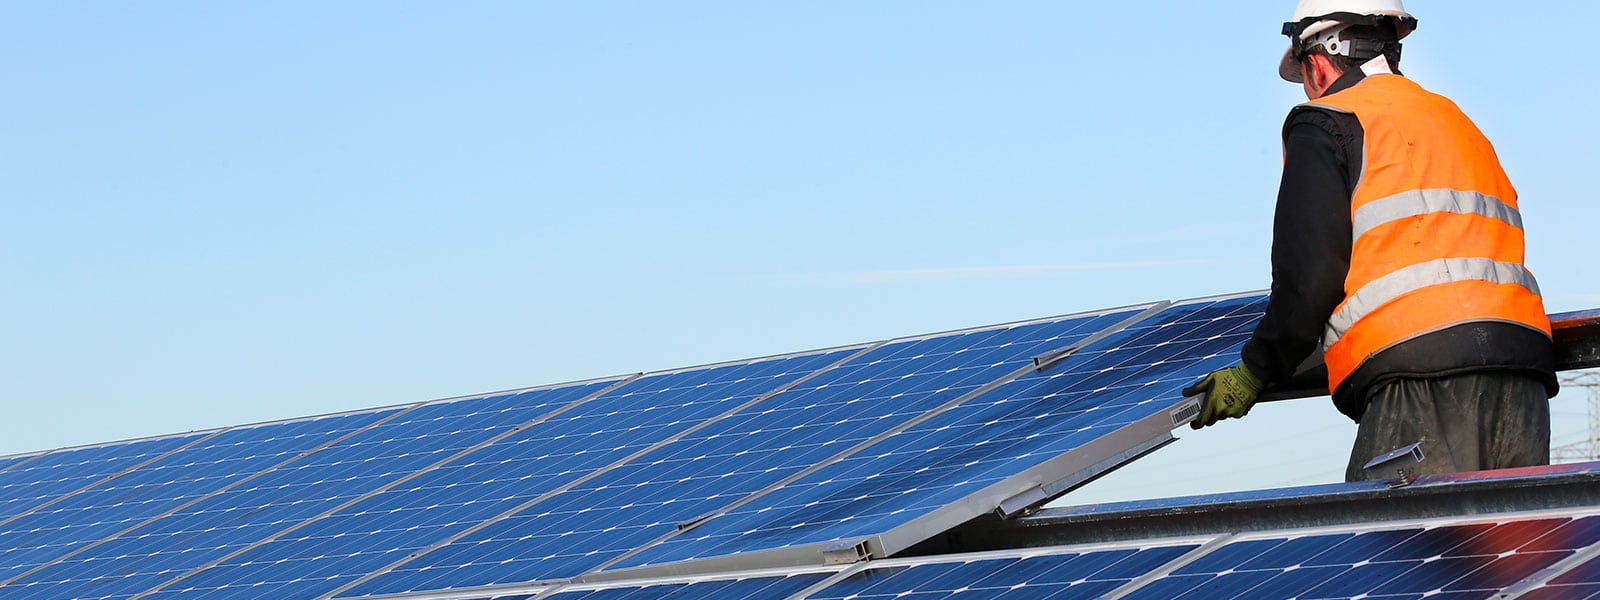 Nouvelles du soleil dans l’Aude : construction des centrales solaires photovoltaïques Canèles et La Serre